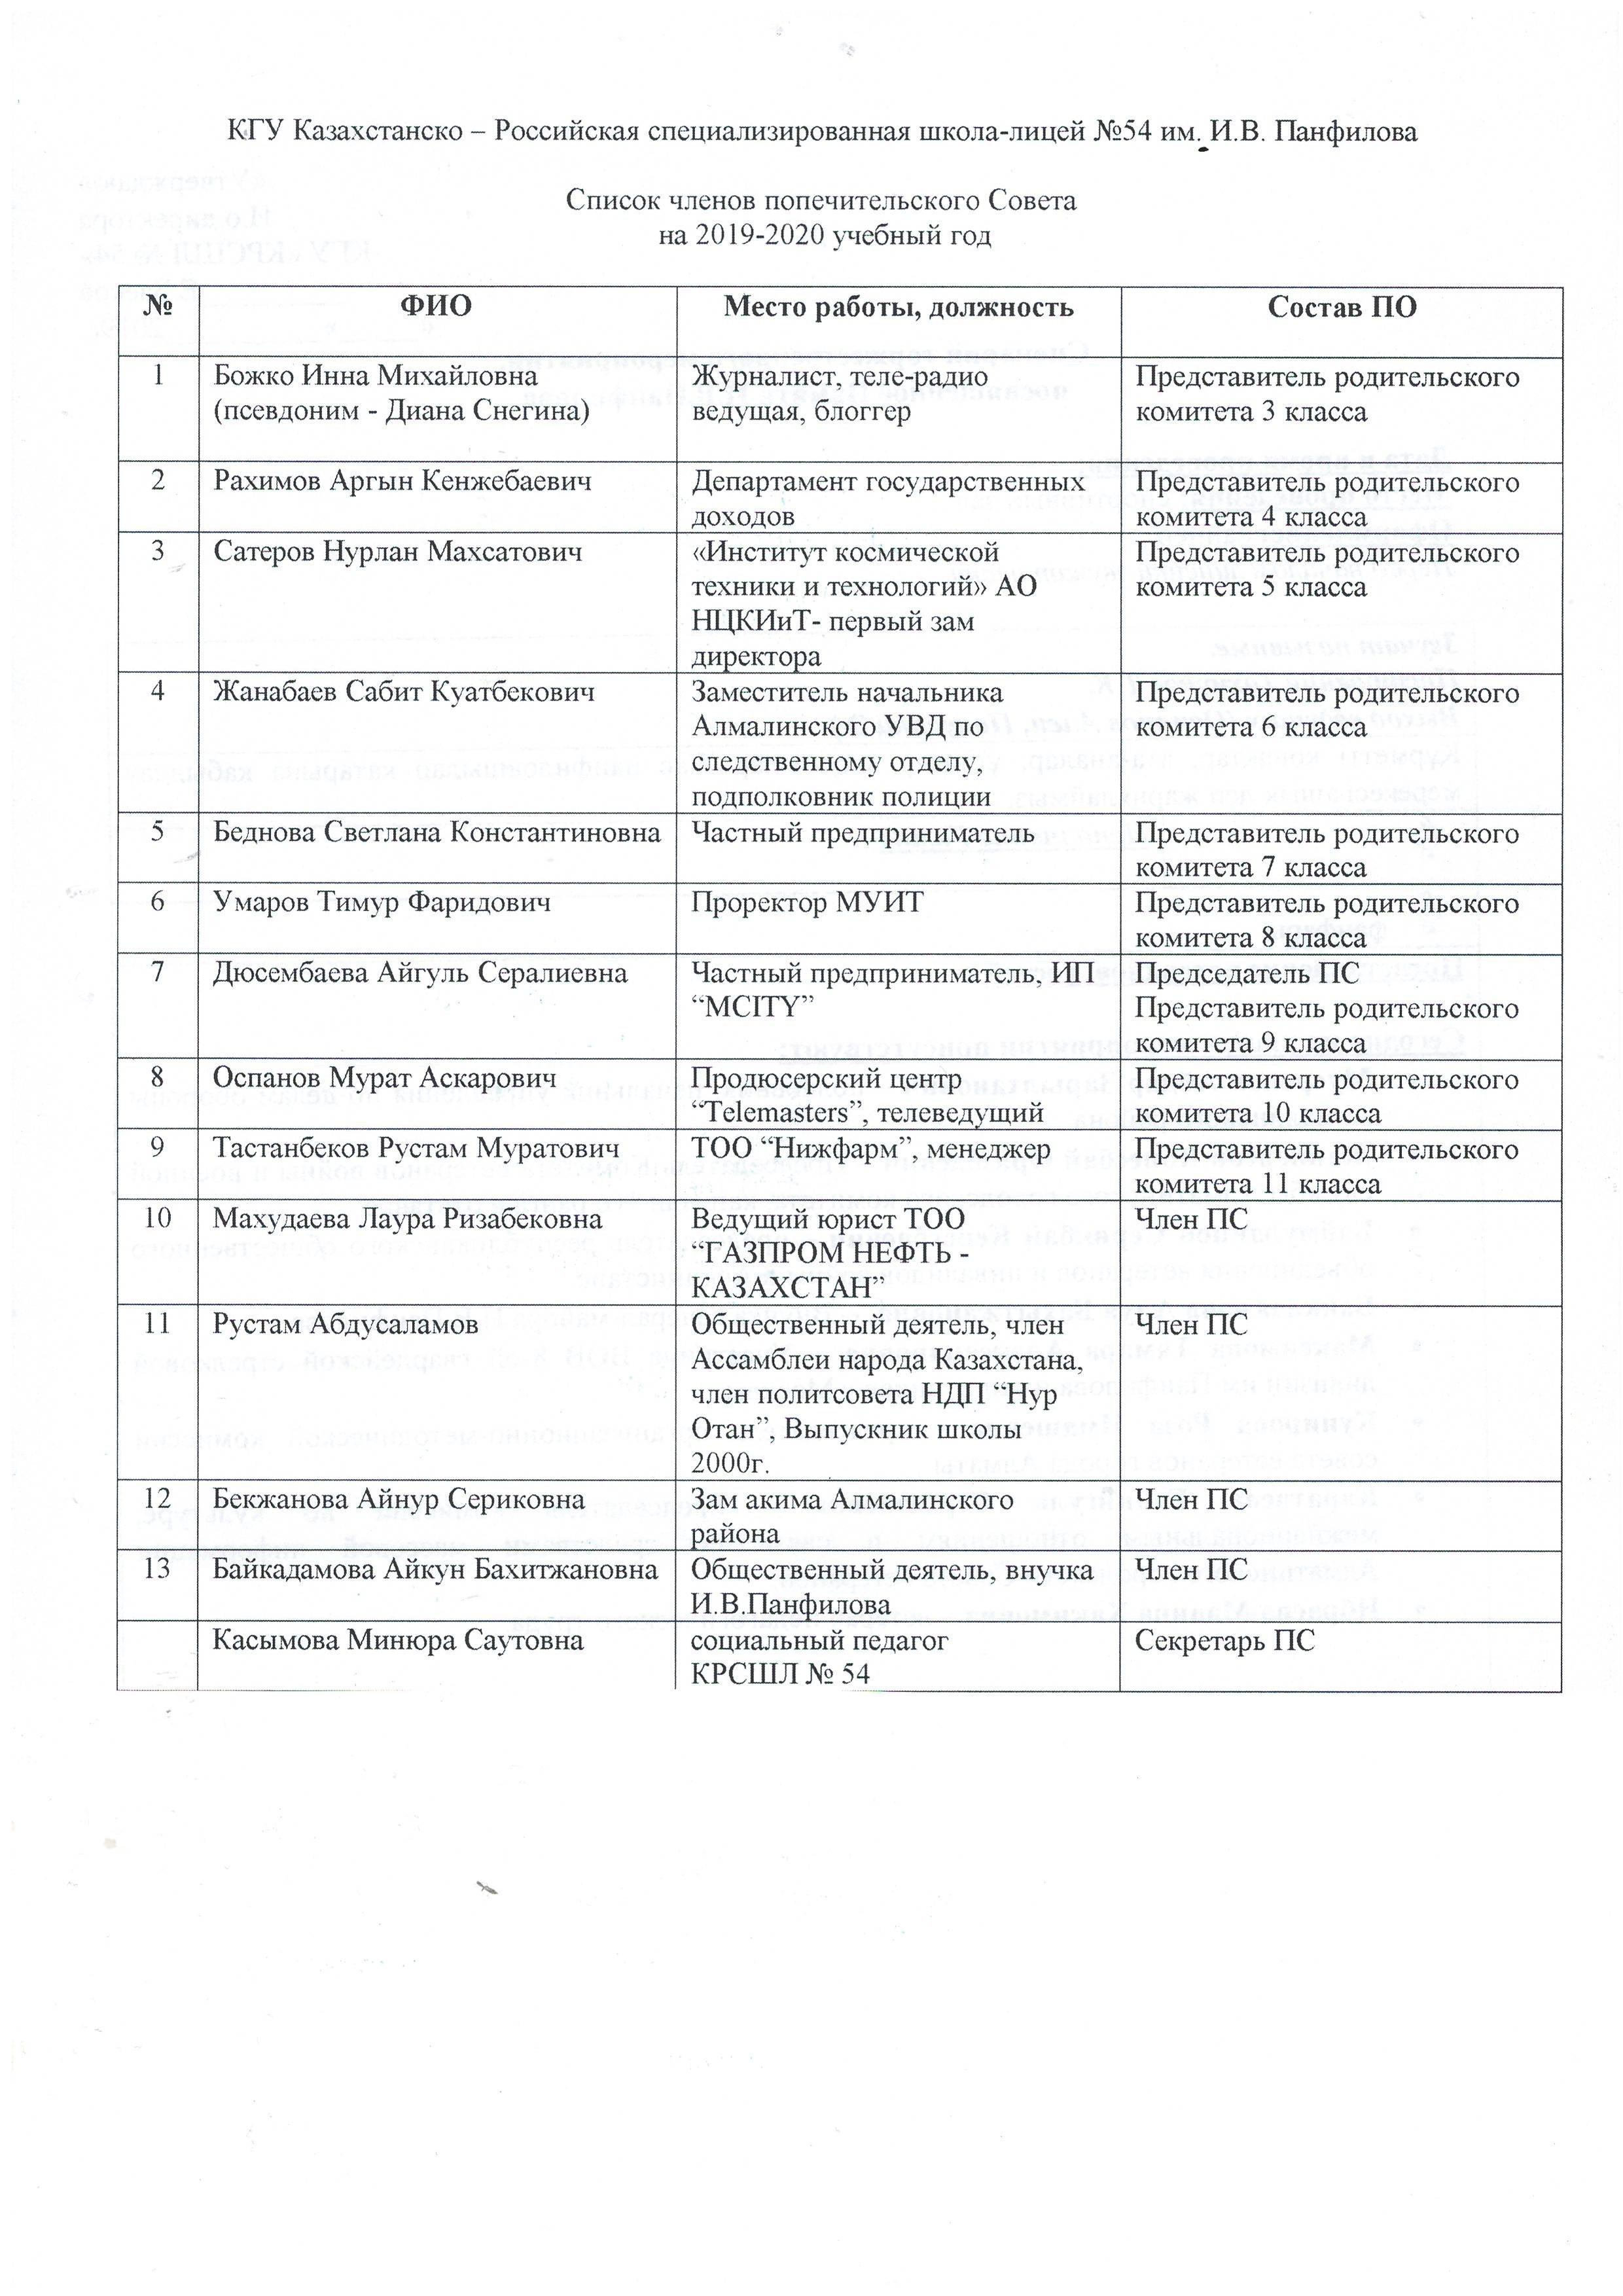 Список членов Попечительского Совета